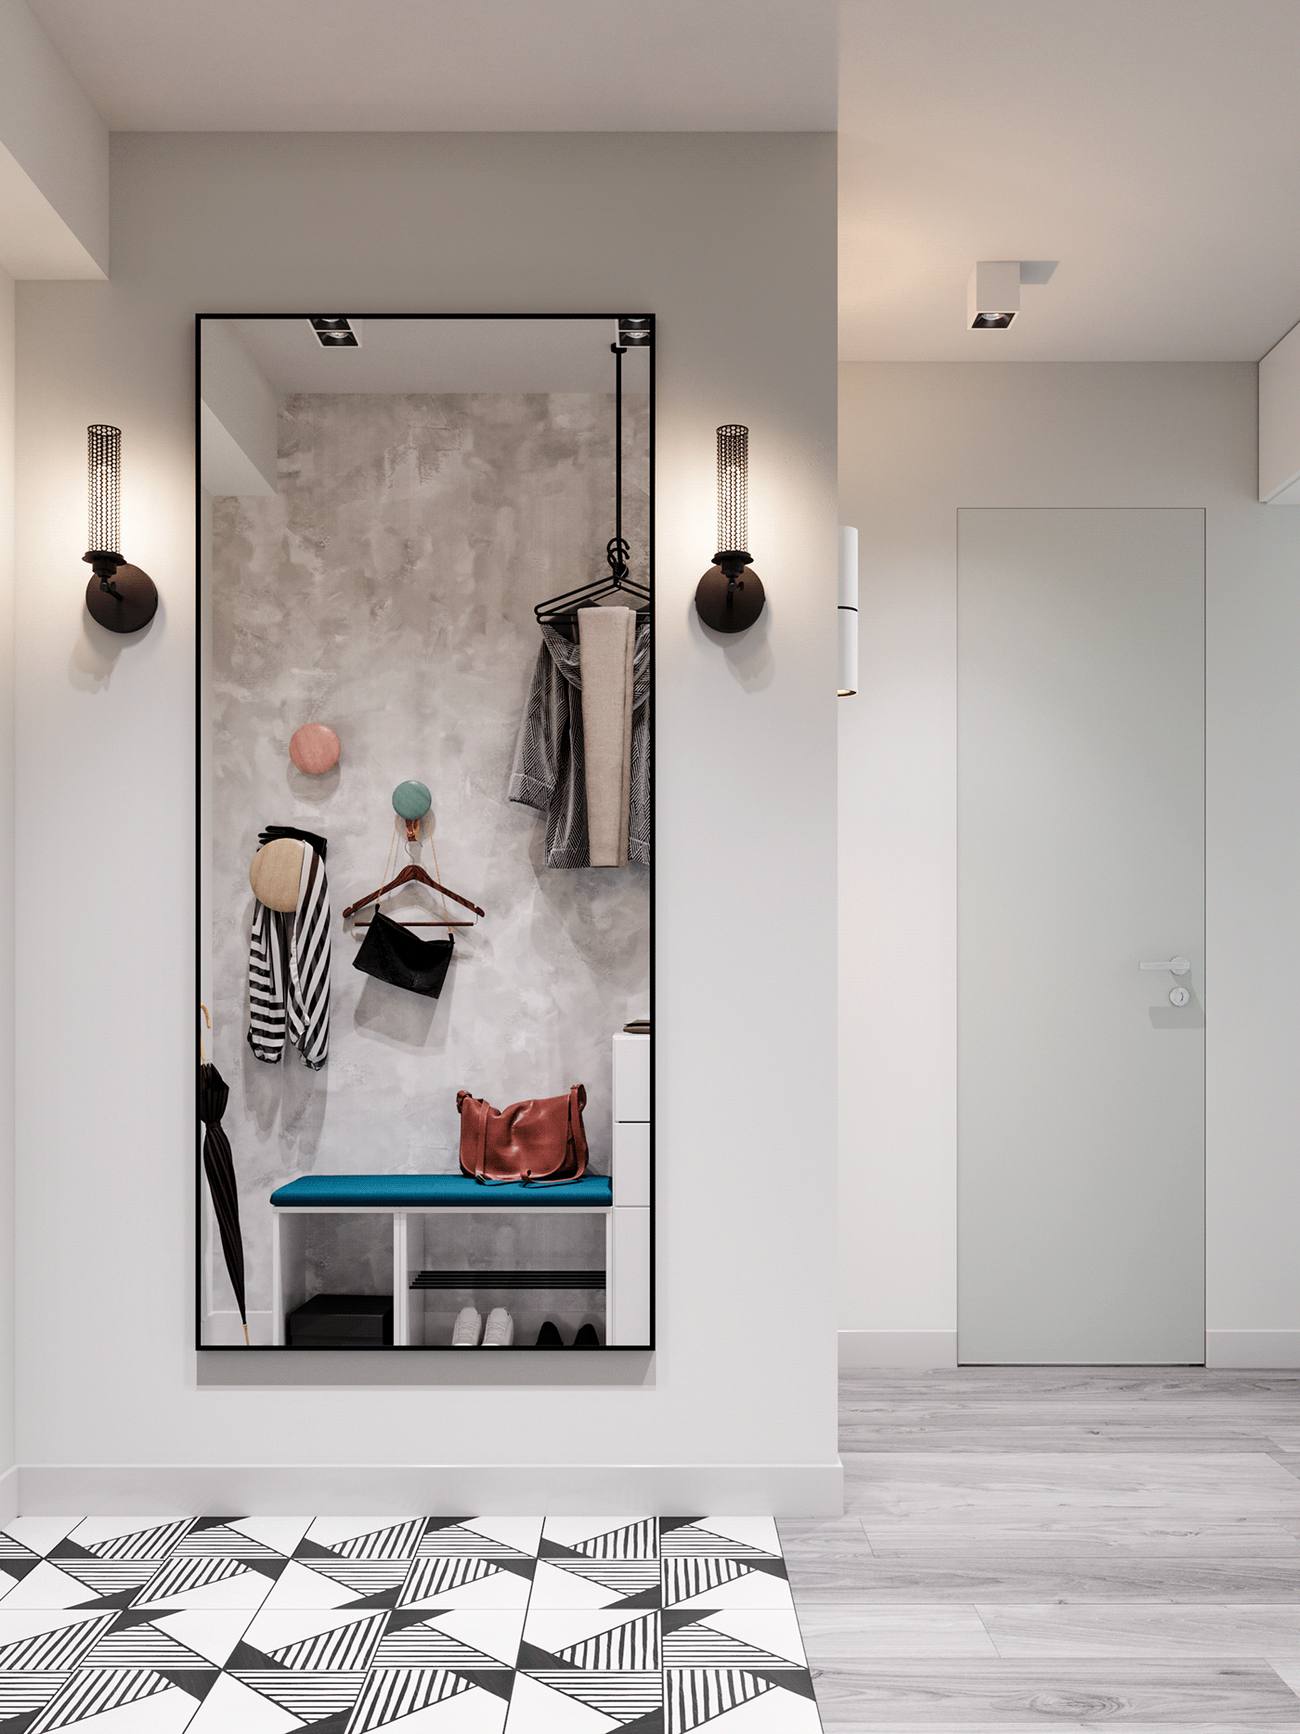 Đối diện là tấm gương soi khổ lớn treo dọc bức tường. Hai bên là đèn gắn tường thiết kế độc đáo làm tôn lên vẻ đẹp của không gian nhỏ. Tấm gương vừa giúp chủ nhân chỉnh trang y phục trước khi ra khỏi nhà vừa góp phần 'nhân đôi' lối vào.